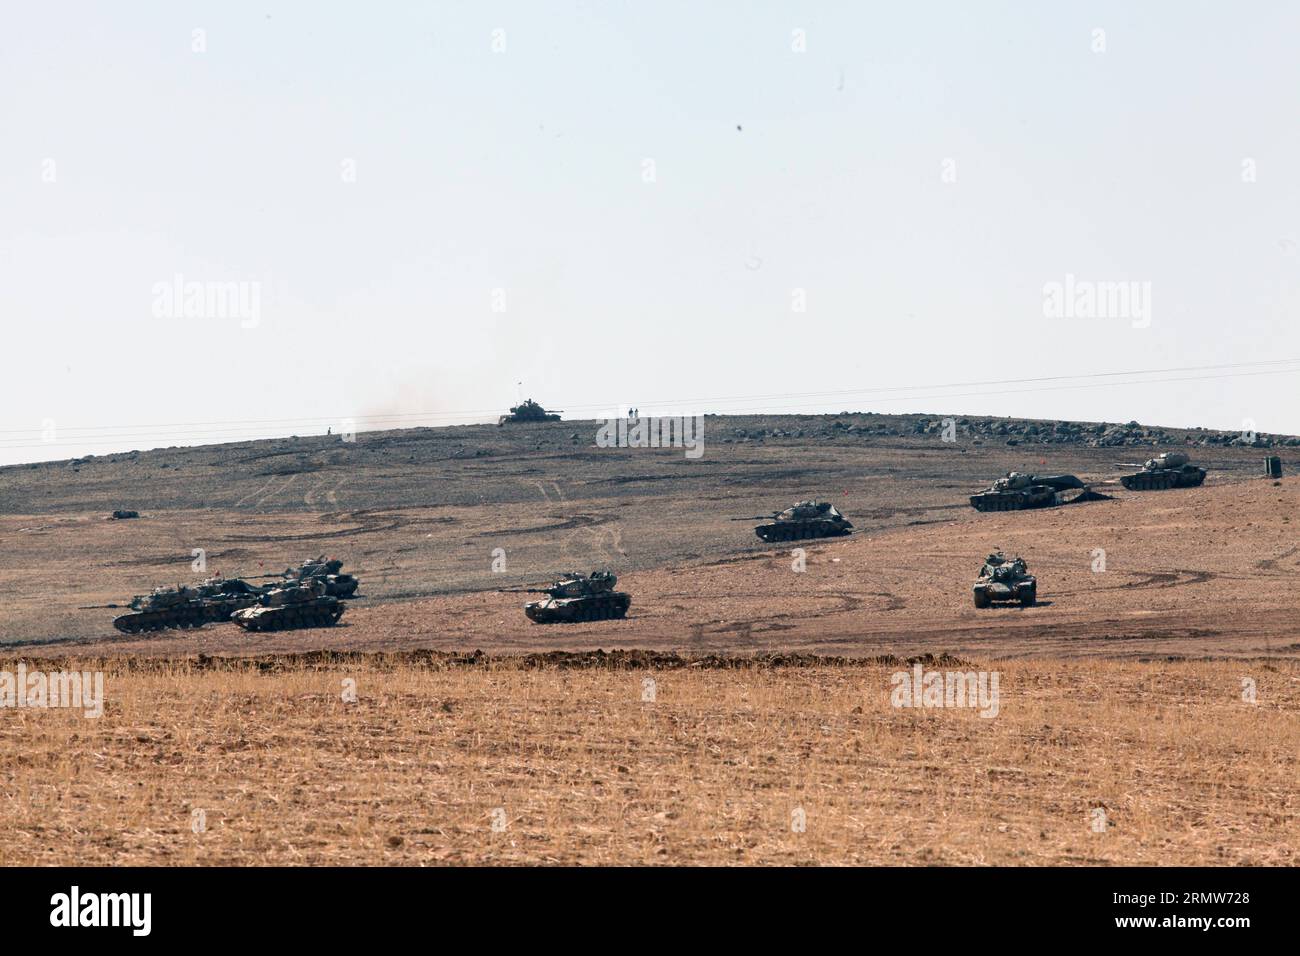 (141008) -- ANKARA, 8 ottobre 2014 -- i carri armati dell'esercito turco prendono posizione sul lato turco del confine turco-siriano l'8 ottobre 2014. Le forze di sicurezza turche hanno adottato rigorose misure di sicurezza lungo il confine turco-siriano per impedire infiltrazioni dalla Siria nel territorio turco.) TURKEY-SANLIURFA-SECUTITY MEASURES-INTENSIFIED MertxMacit PUBLICATIONxNOTxINxCHN Ankara OCT 8 2014 carri armati dell'esercito turco prendono posizione SUL lato turco del confine turco-siriano ALL'8 ottobre 2014 le forze di sicurezza turche hanno adottato rigorose misure di sicurezza lungo la linea di frontiera turco-siriana a Pr Foto Stock